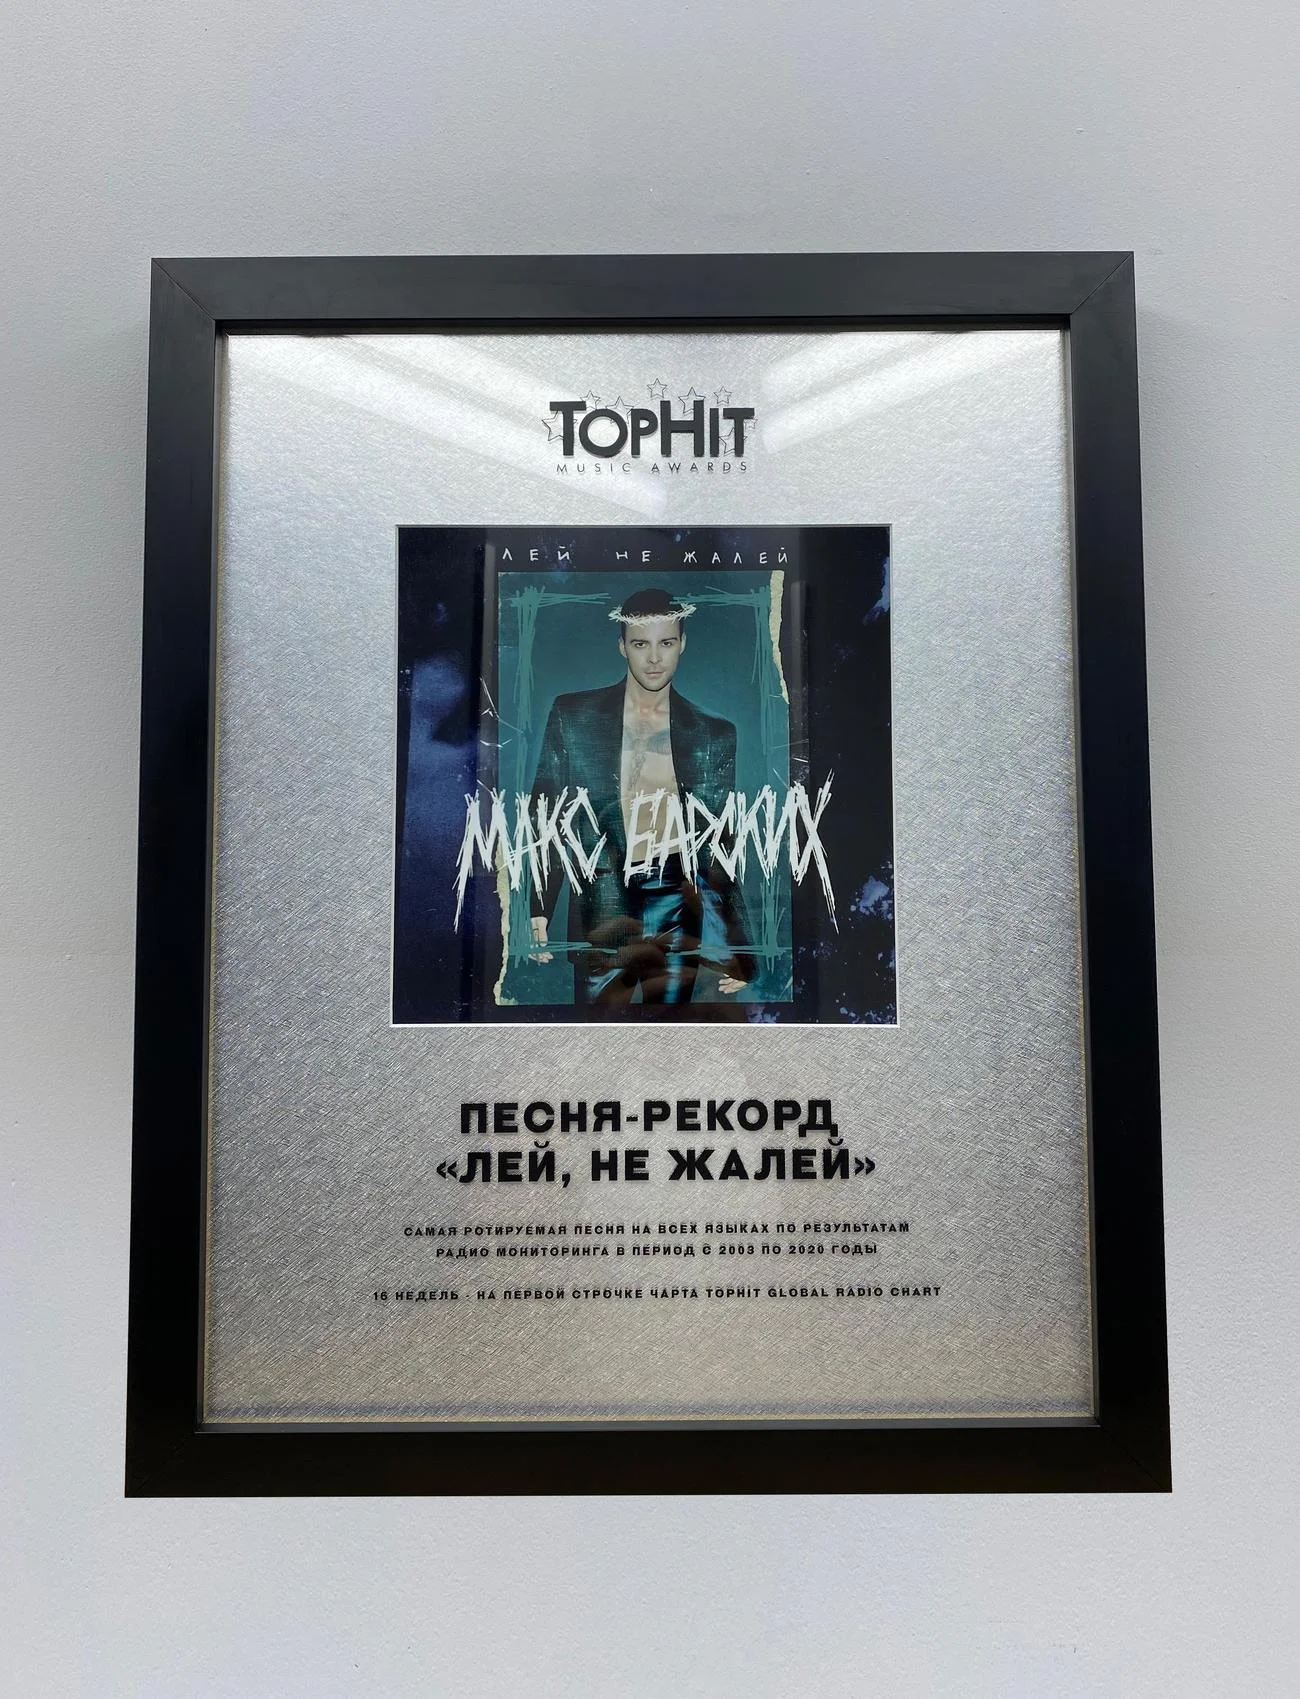 Обійшов Біллі Айліш: Макс Барських отримав унікальну нагороду TOPHIT MUSIC AWARDS - фото 483622